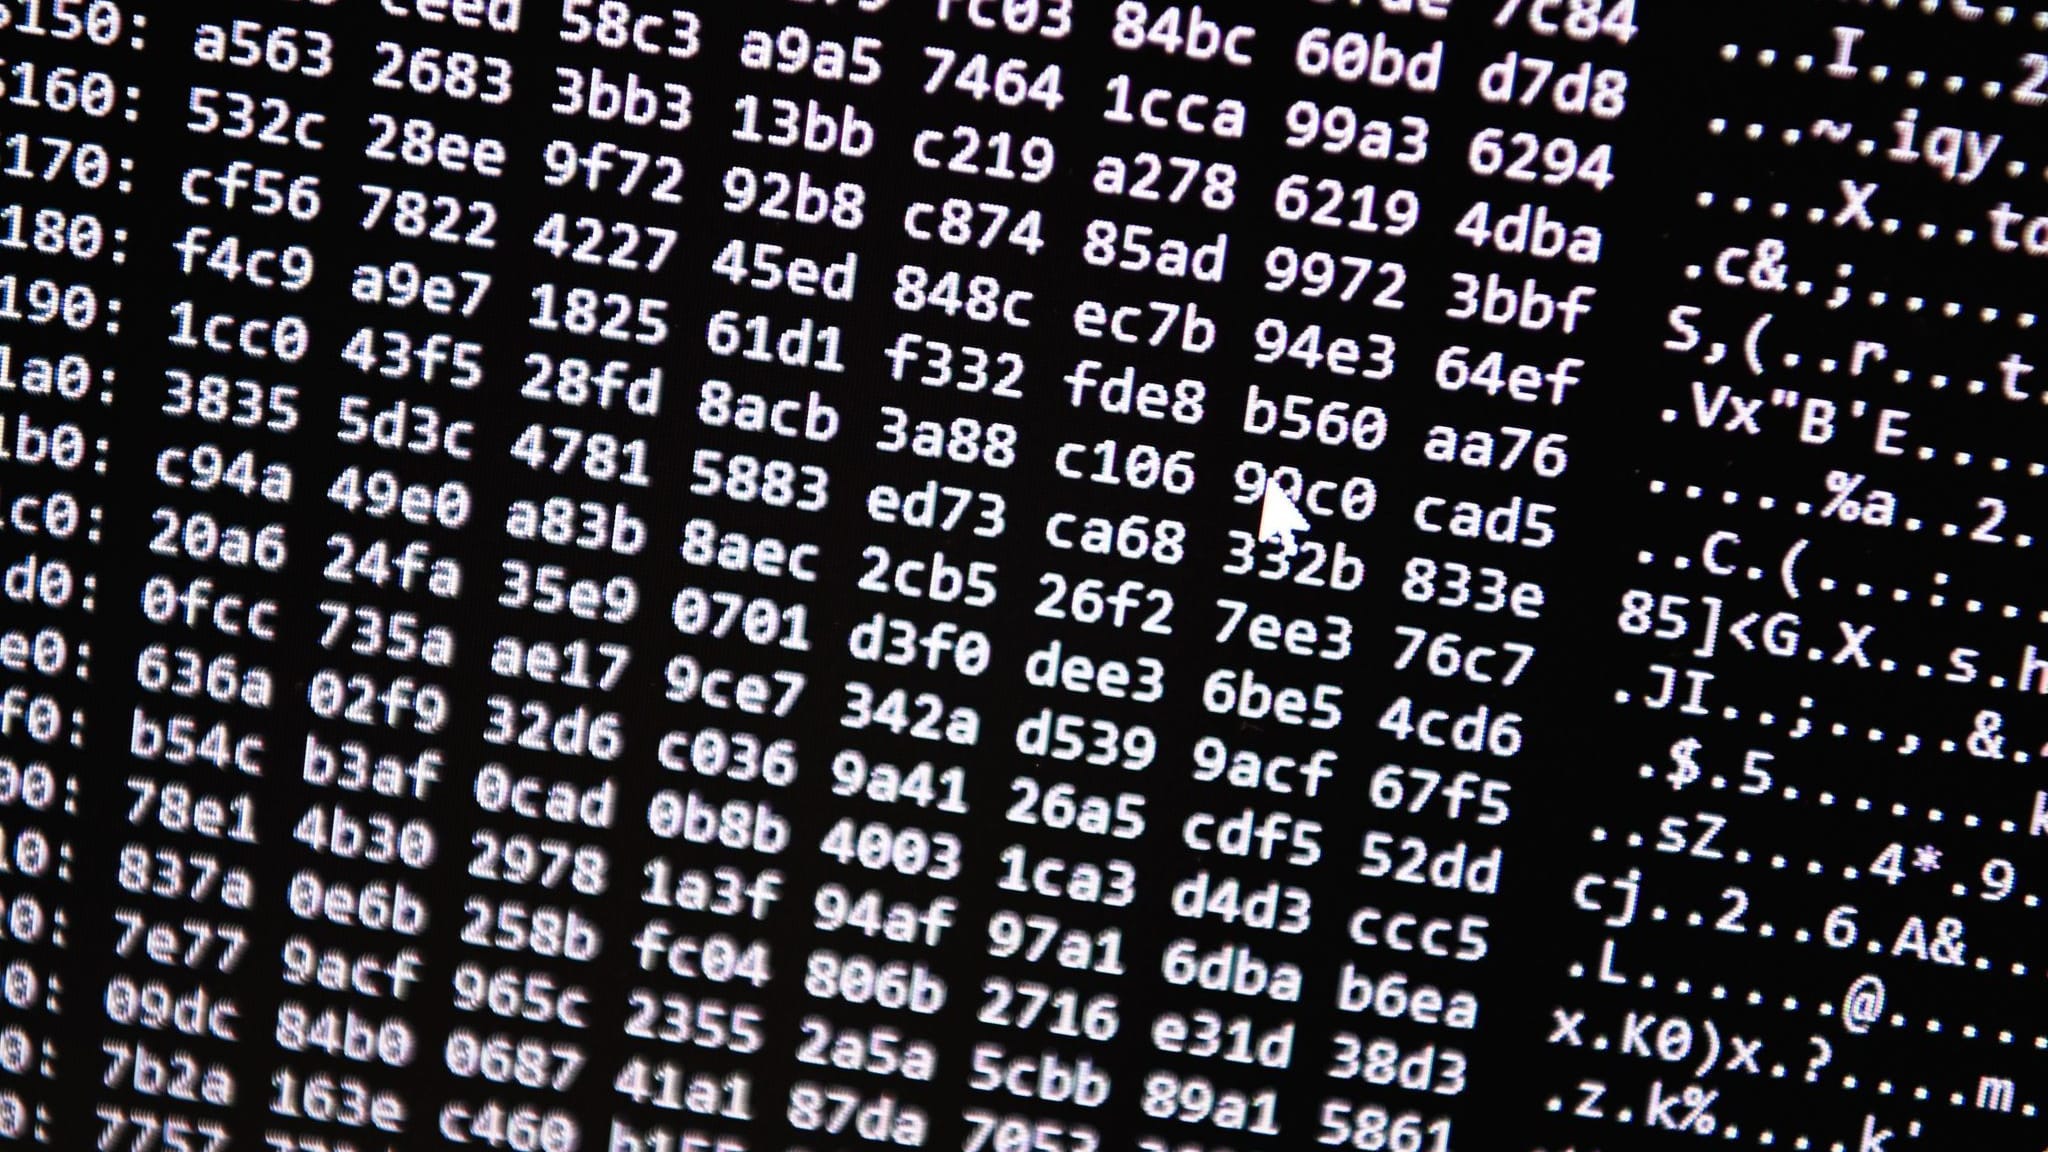 Regierung und Polizei betroffen: Hackerangriff dauert an